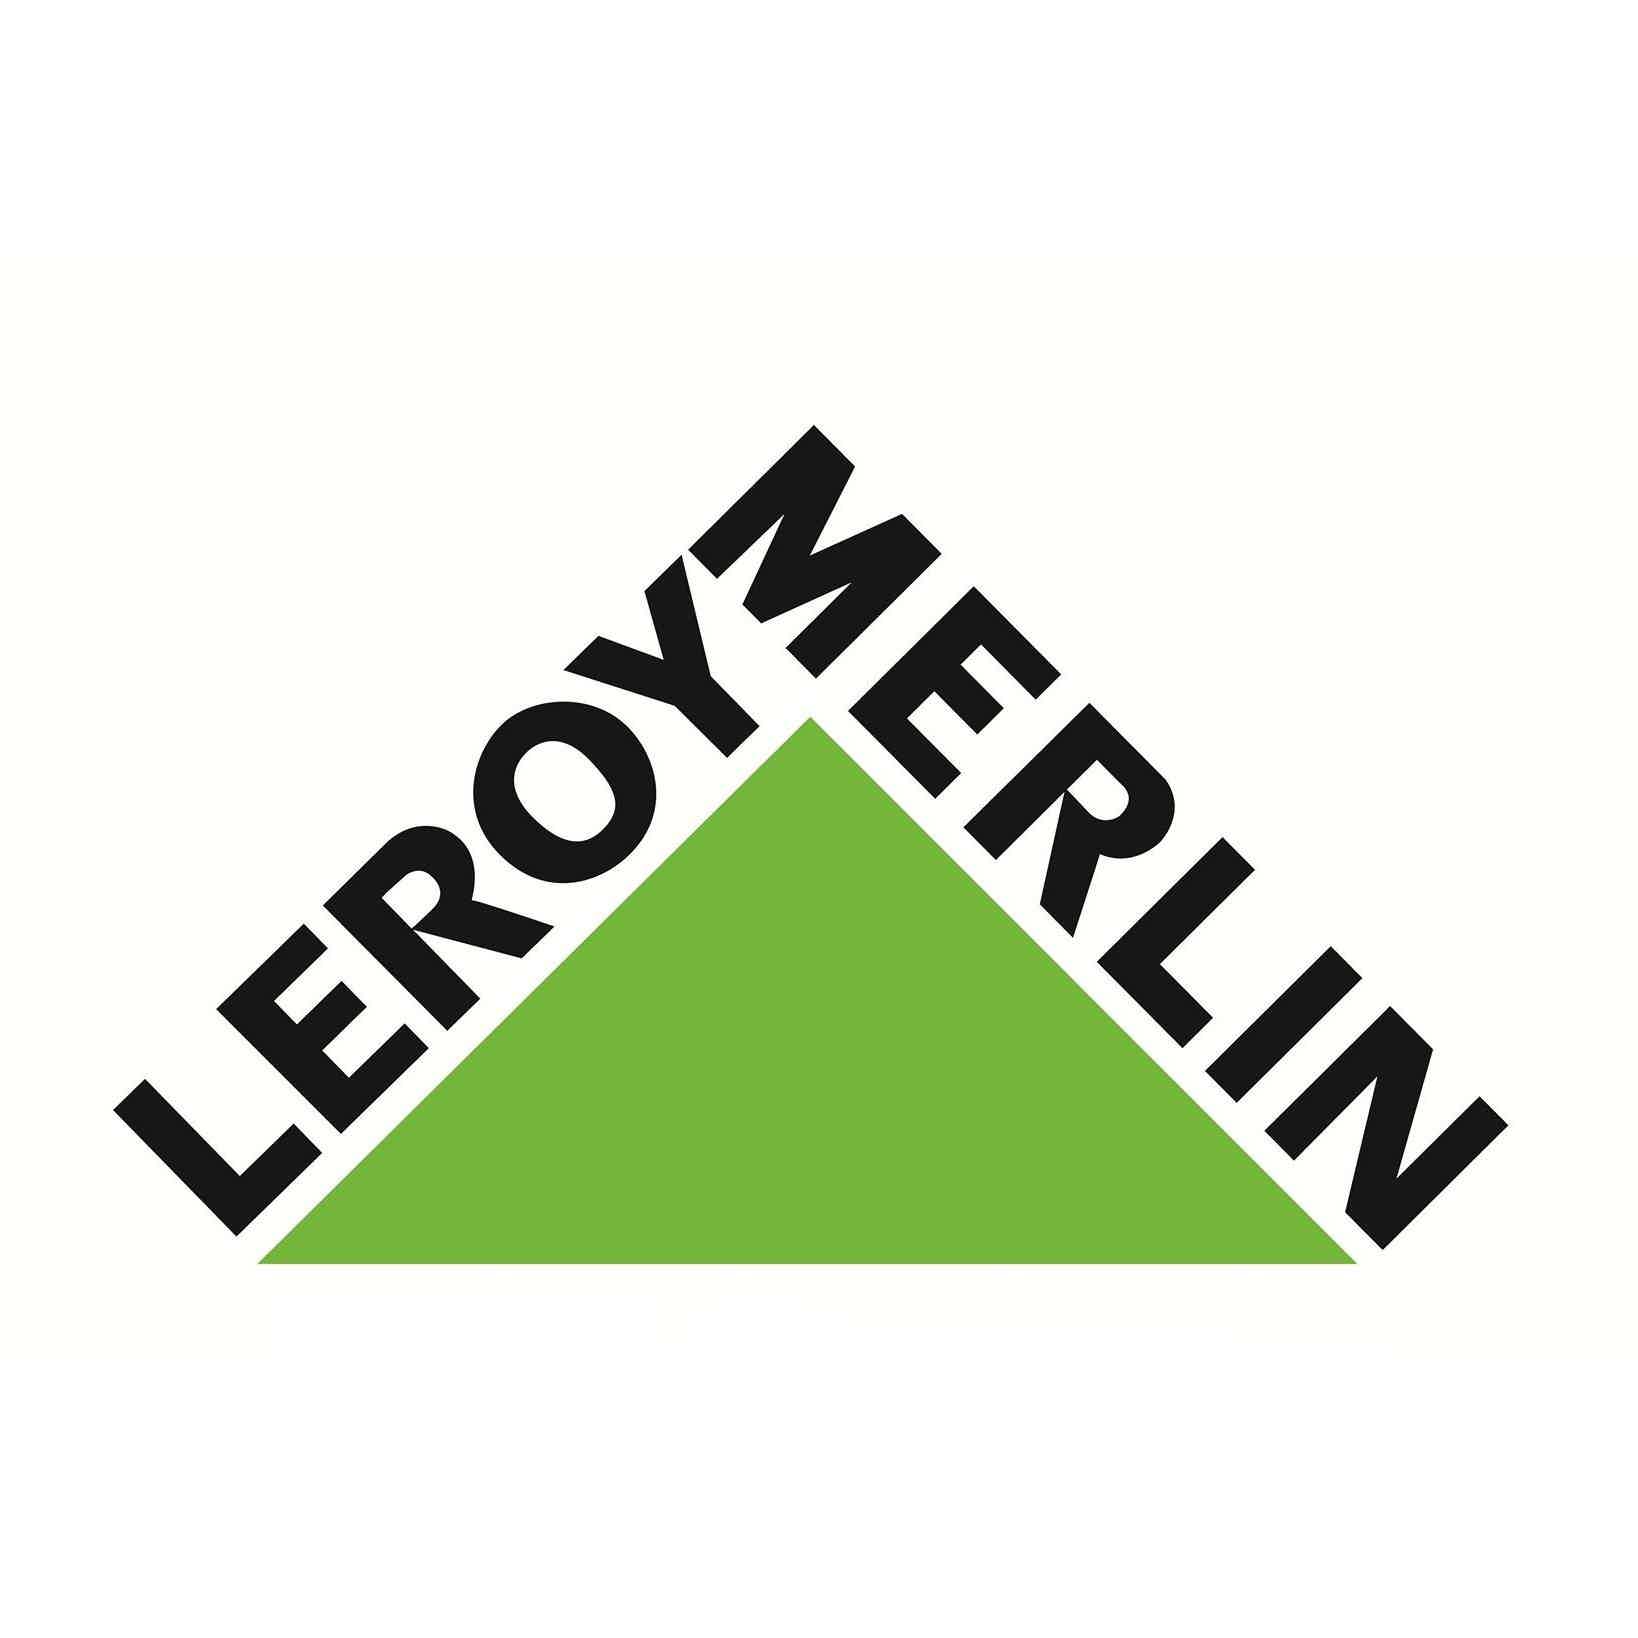 Então, conheça o financiamento Leroy. Fonte: Leroy Merlin.